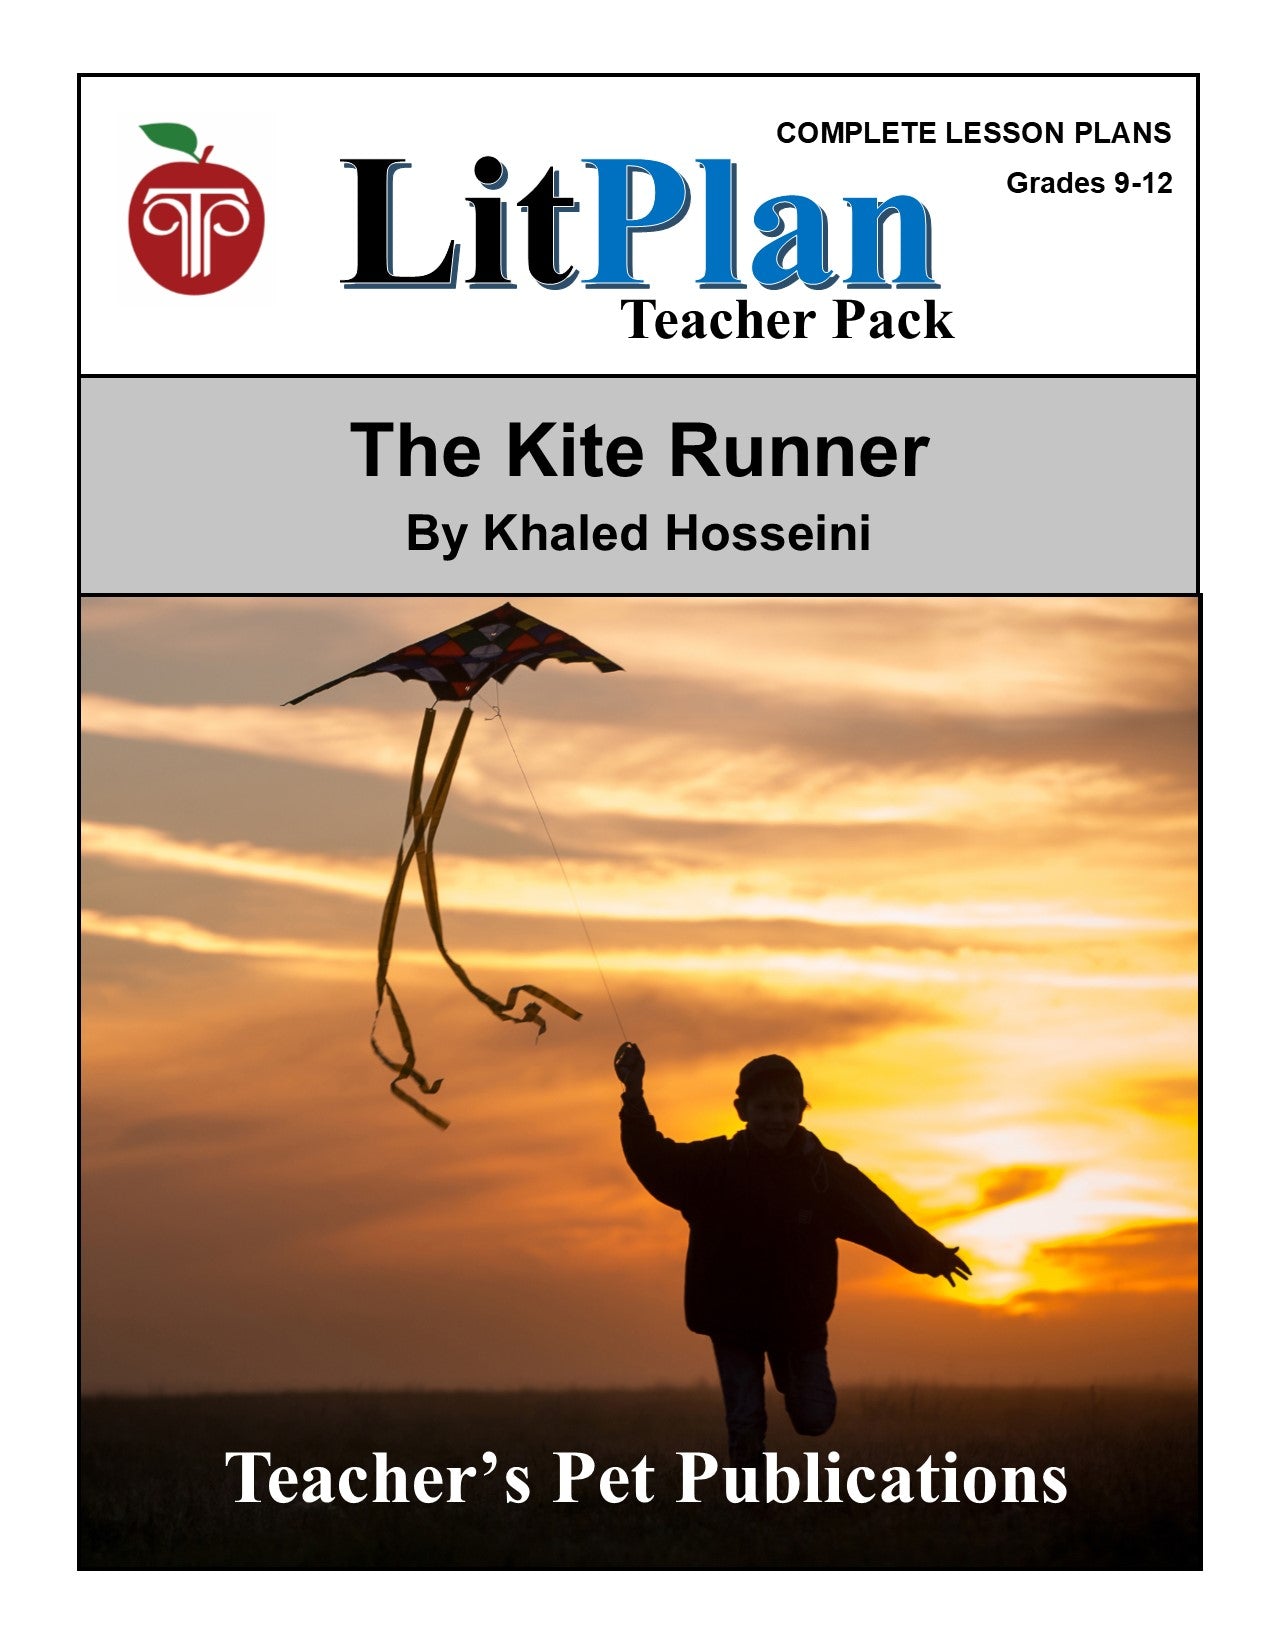 The Kite Runner: LitPlan Teacher Pack Grades 9-12